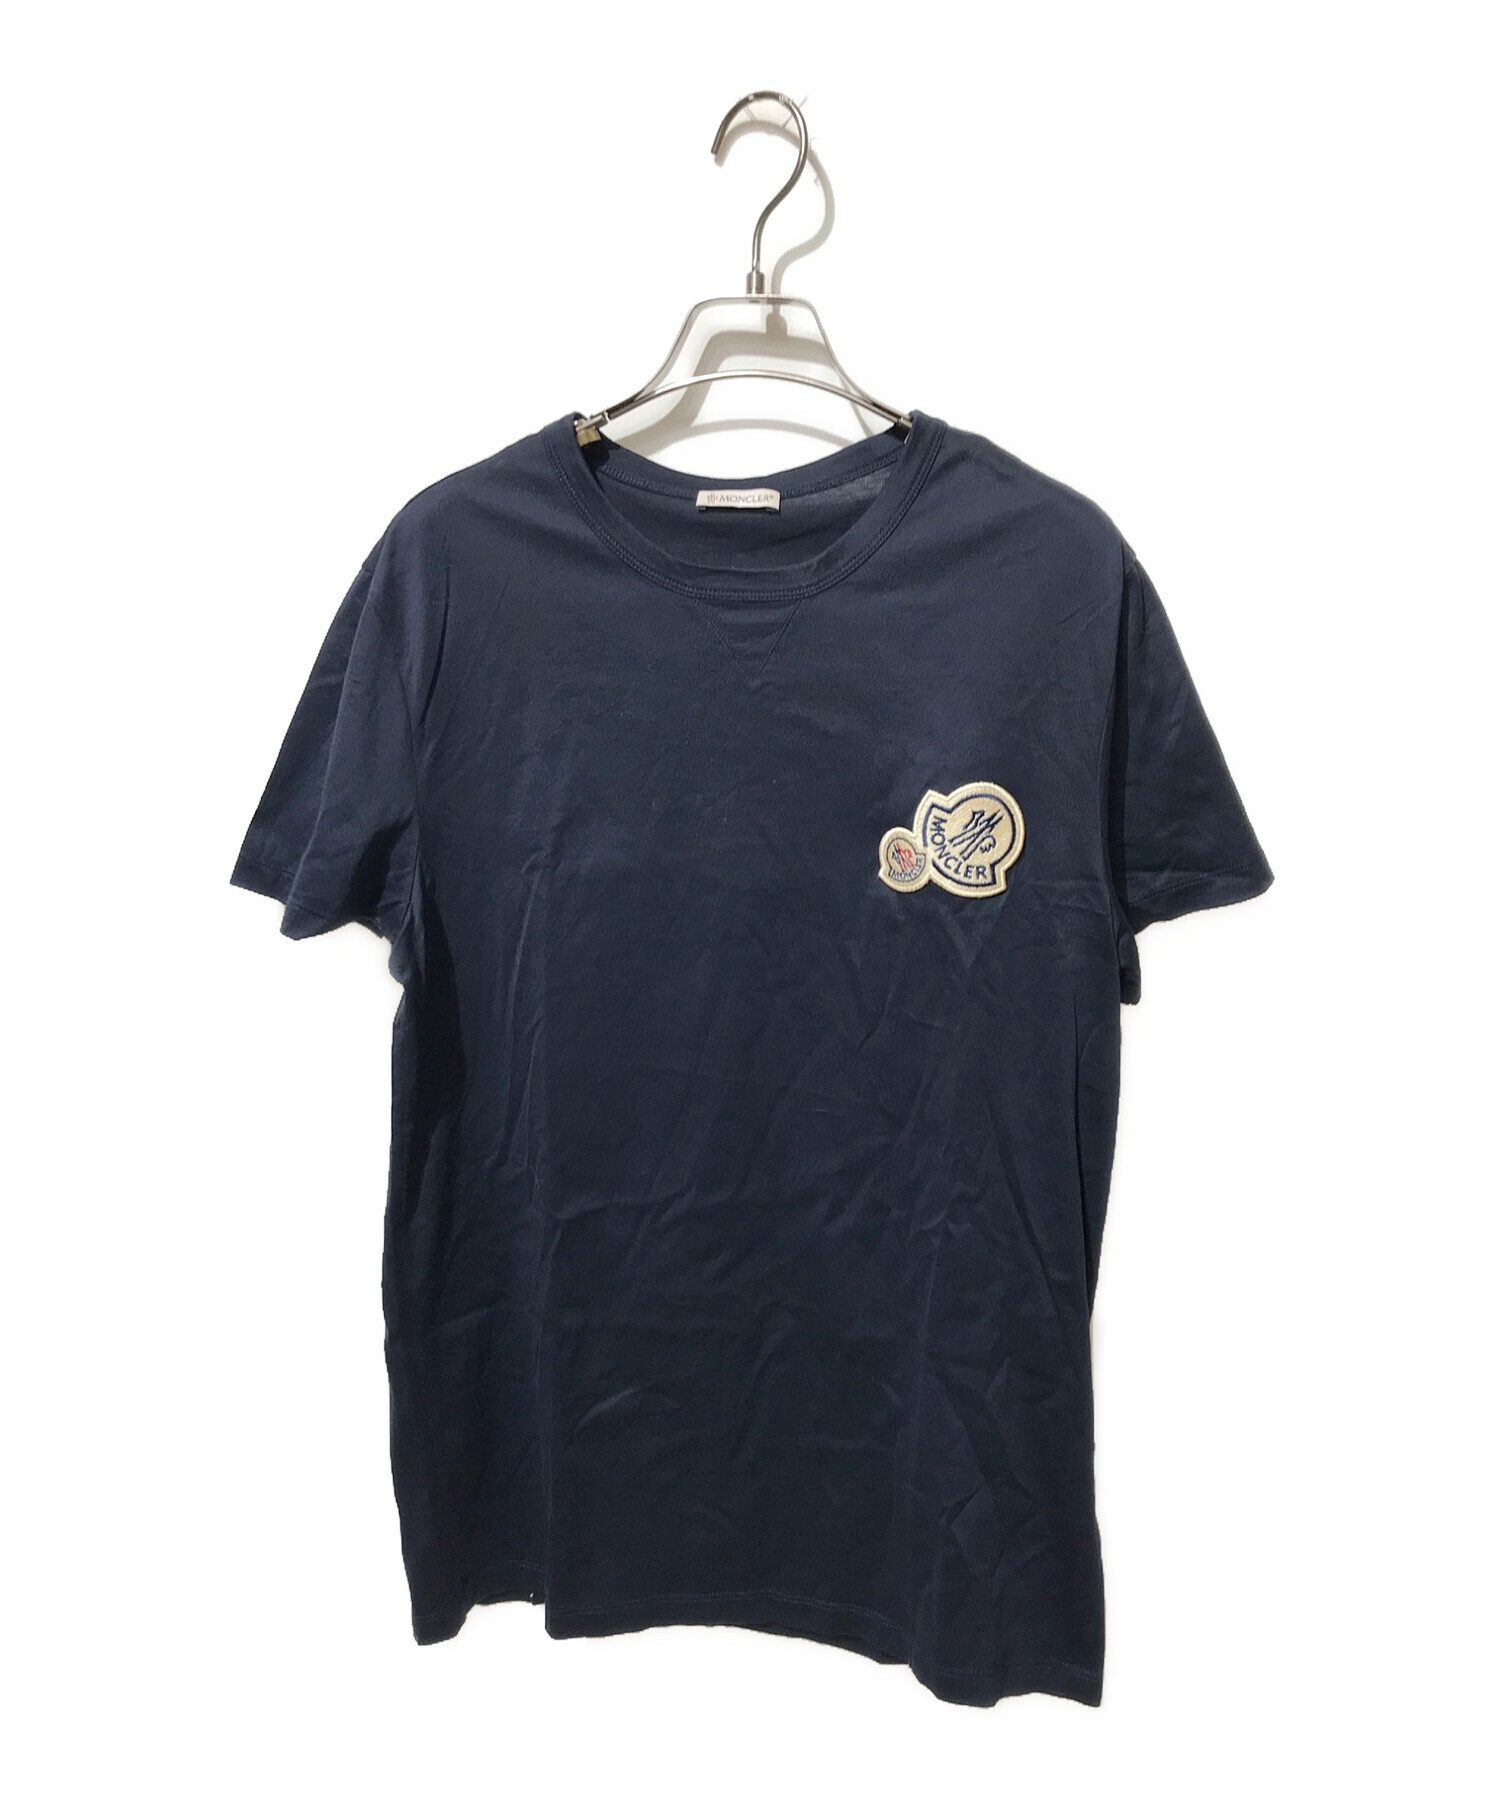 MONCLER (モンクレール) ダブルロゴワッペンクルーネックTシャツ ネイビー サイズ:M